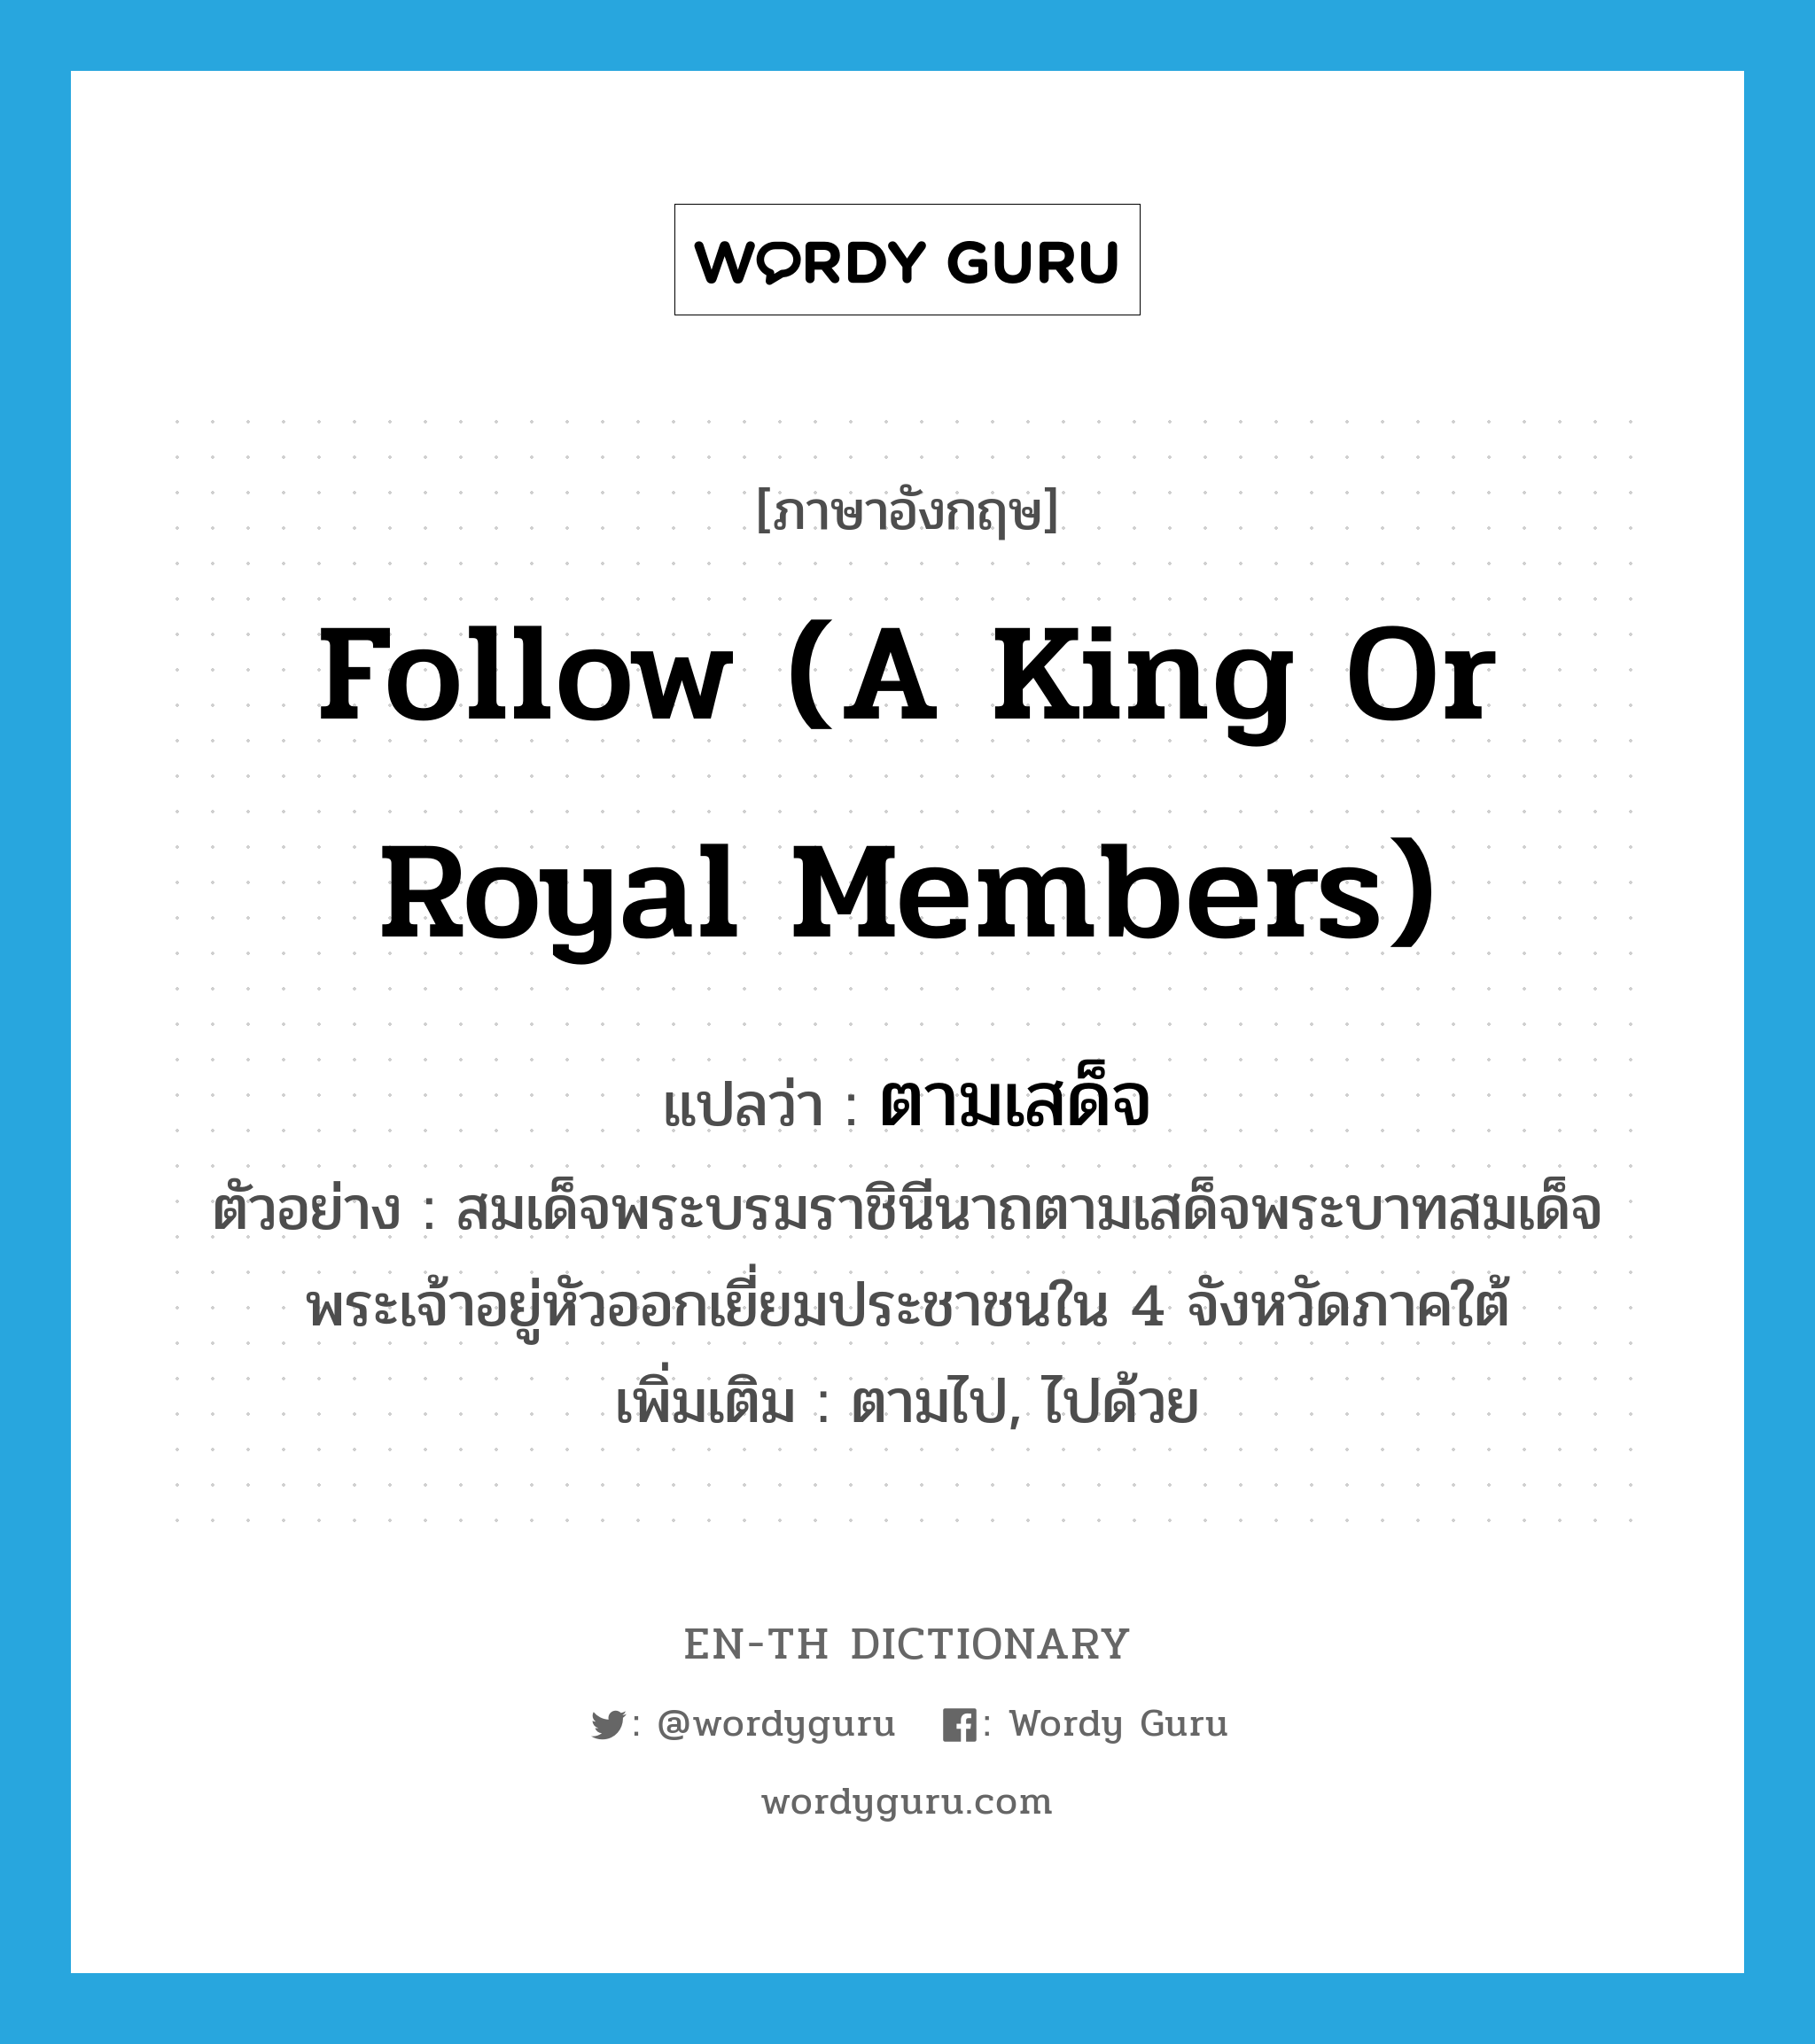 follow (a king or royal members) แปลว่า?, คำศัพท์ภาษาอังกฤษ follow (a king or royal members) แปลว่า ตามเสด็จ ประเภท V ตัวอย่าง สมเด็จพระบรมราชินีนาถตามเสด็จพระบาทสมเด็จพระเจ้าอยู่หัวออกเยี่ยมประชาชนใน 4 จังหวัดภาคใต้ เพิ่มเติม ตามไป, ไปด้วย หมวด V